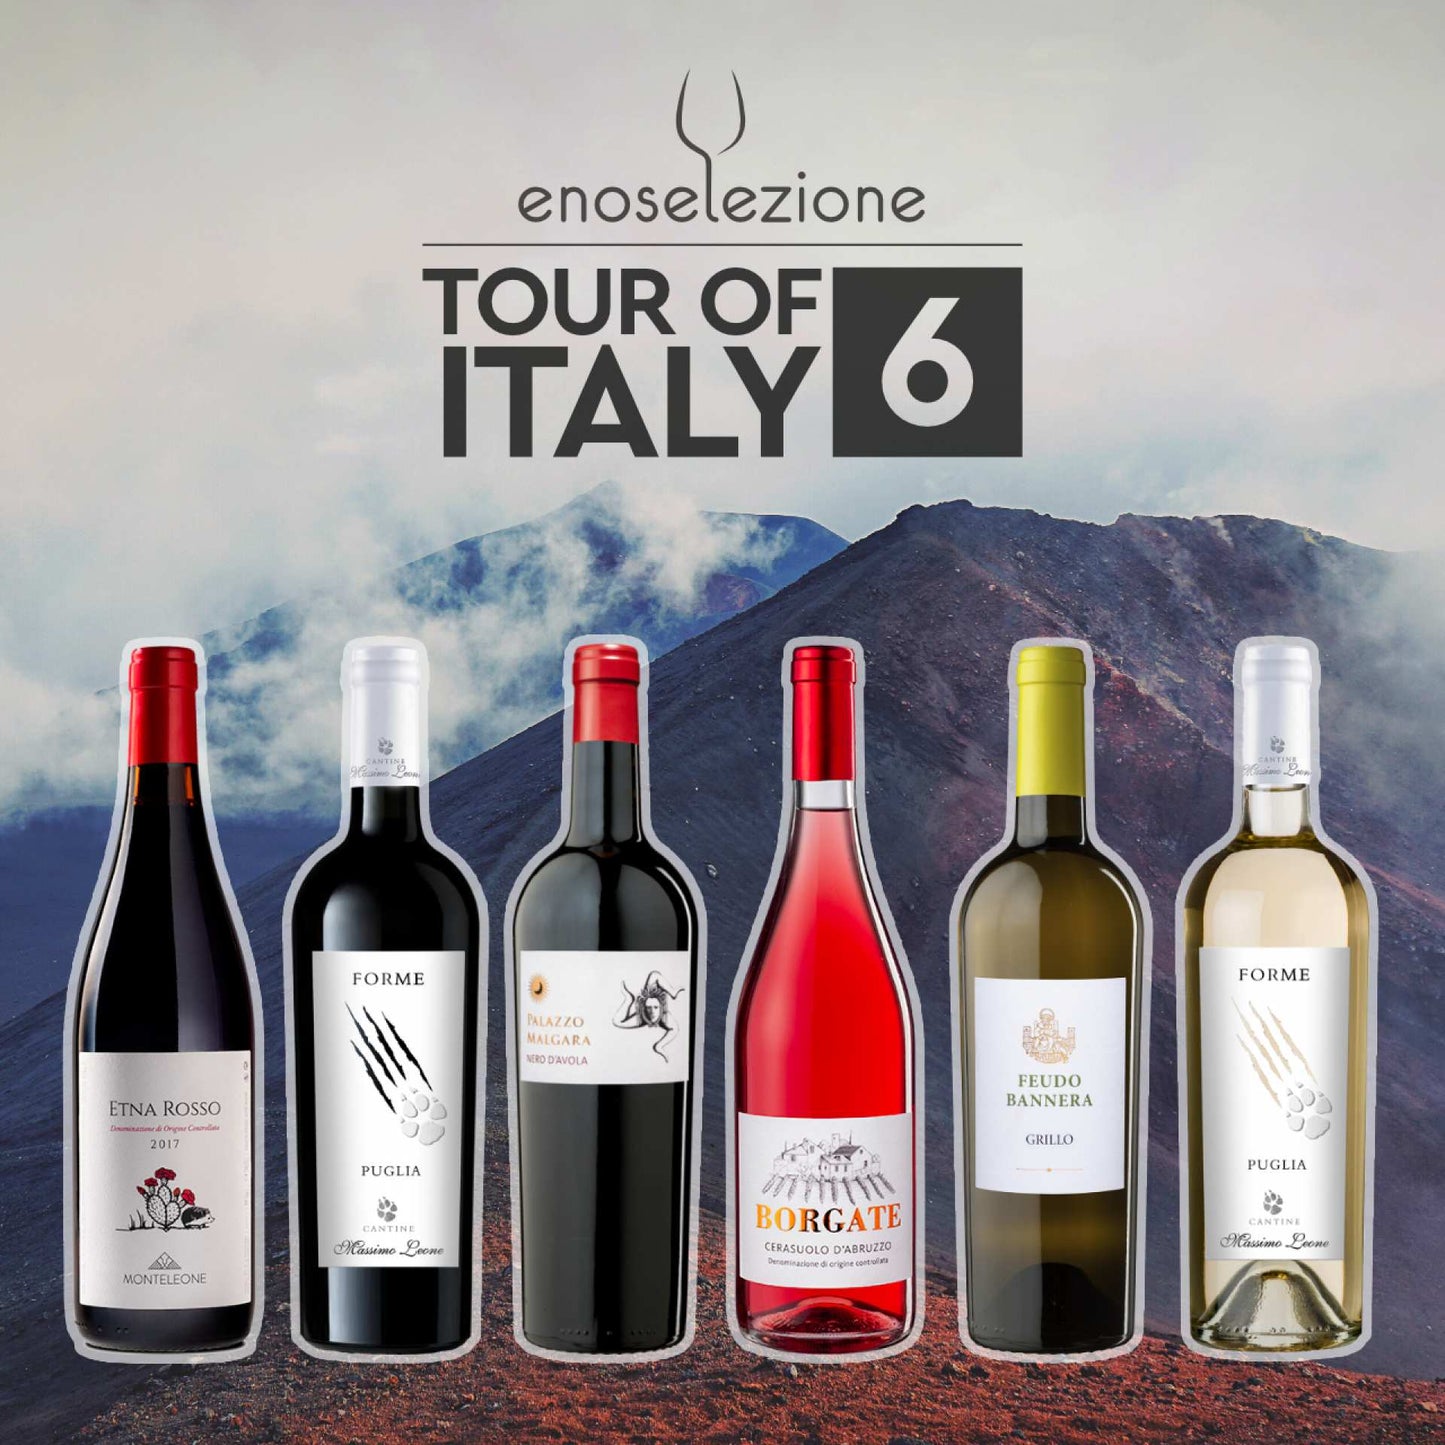 Tasting Set Tour of Italy #6 Etna Rosso Doc Nero D'Avola Sicilia Doc Grillo Sicilia Doc Cerasuolo d'Abruzzo Doc Puglia IGT